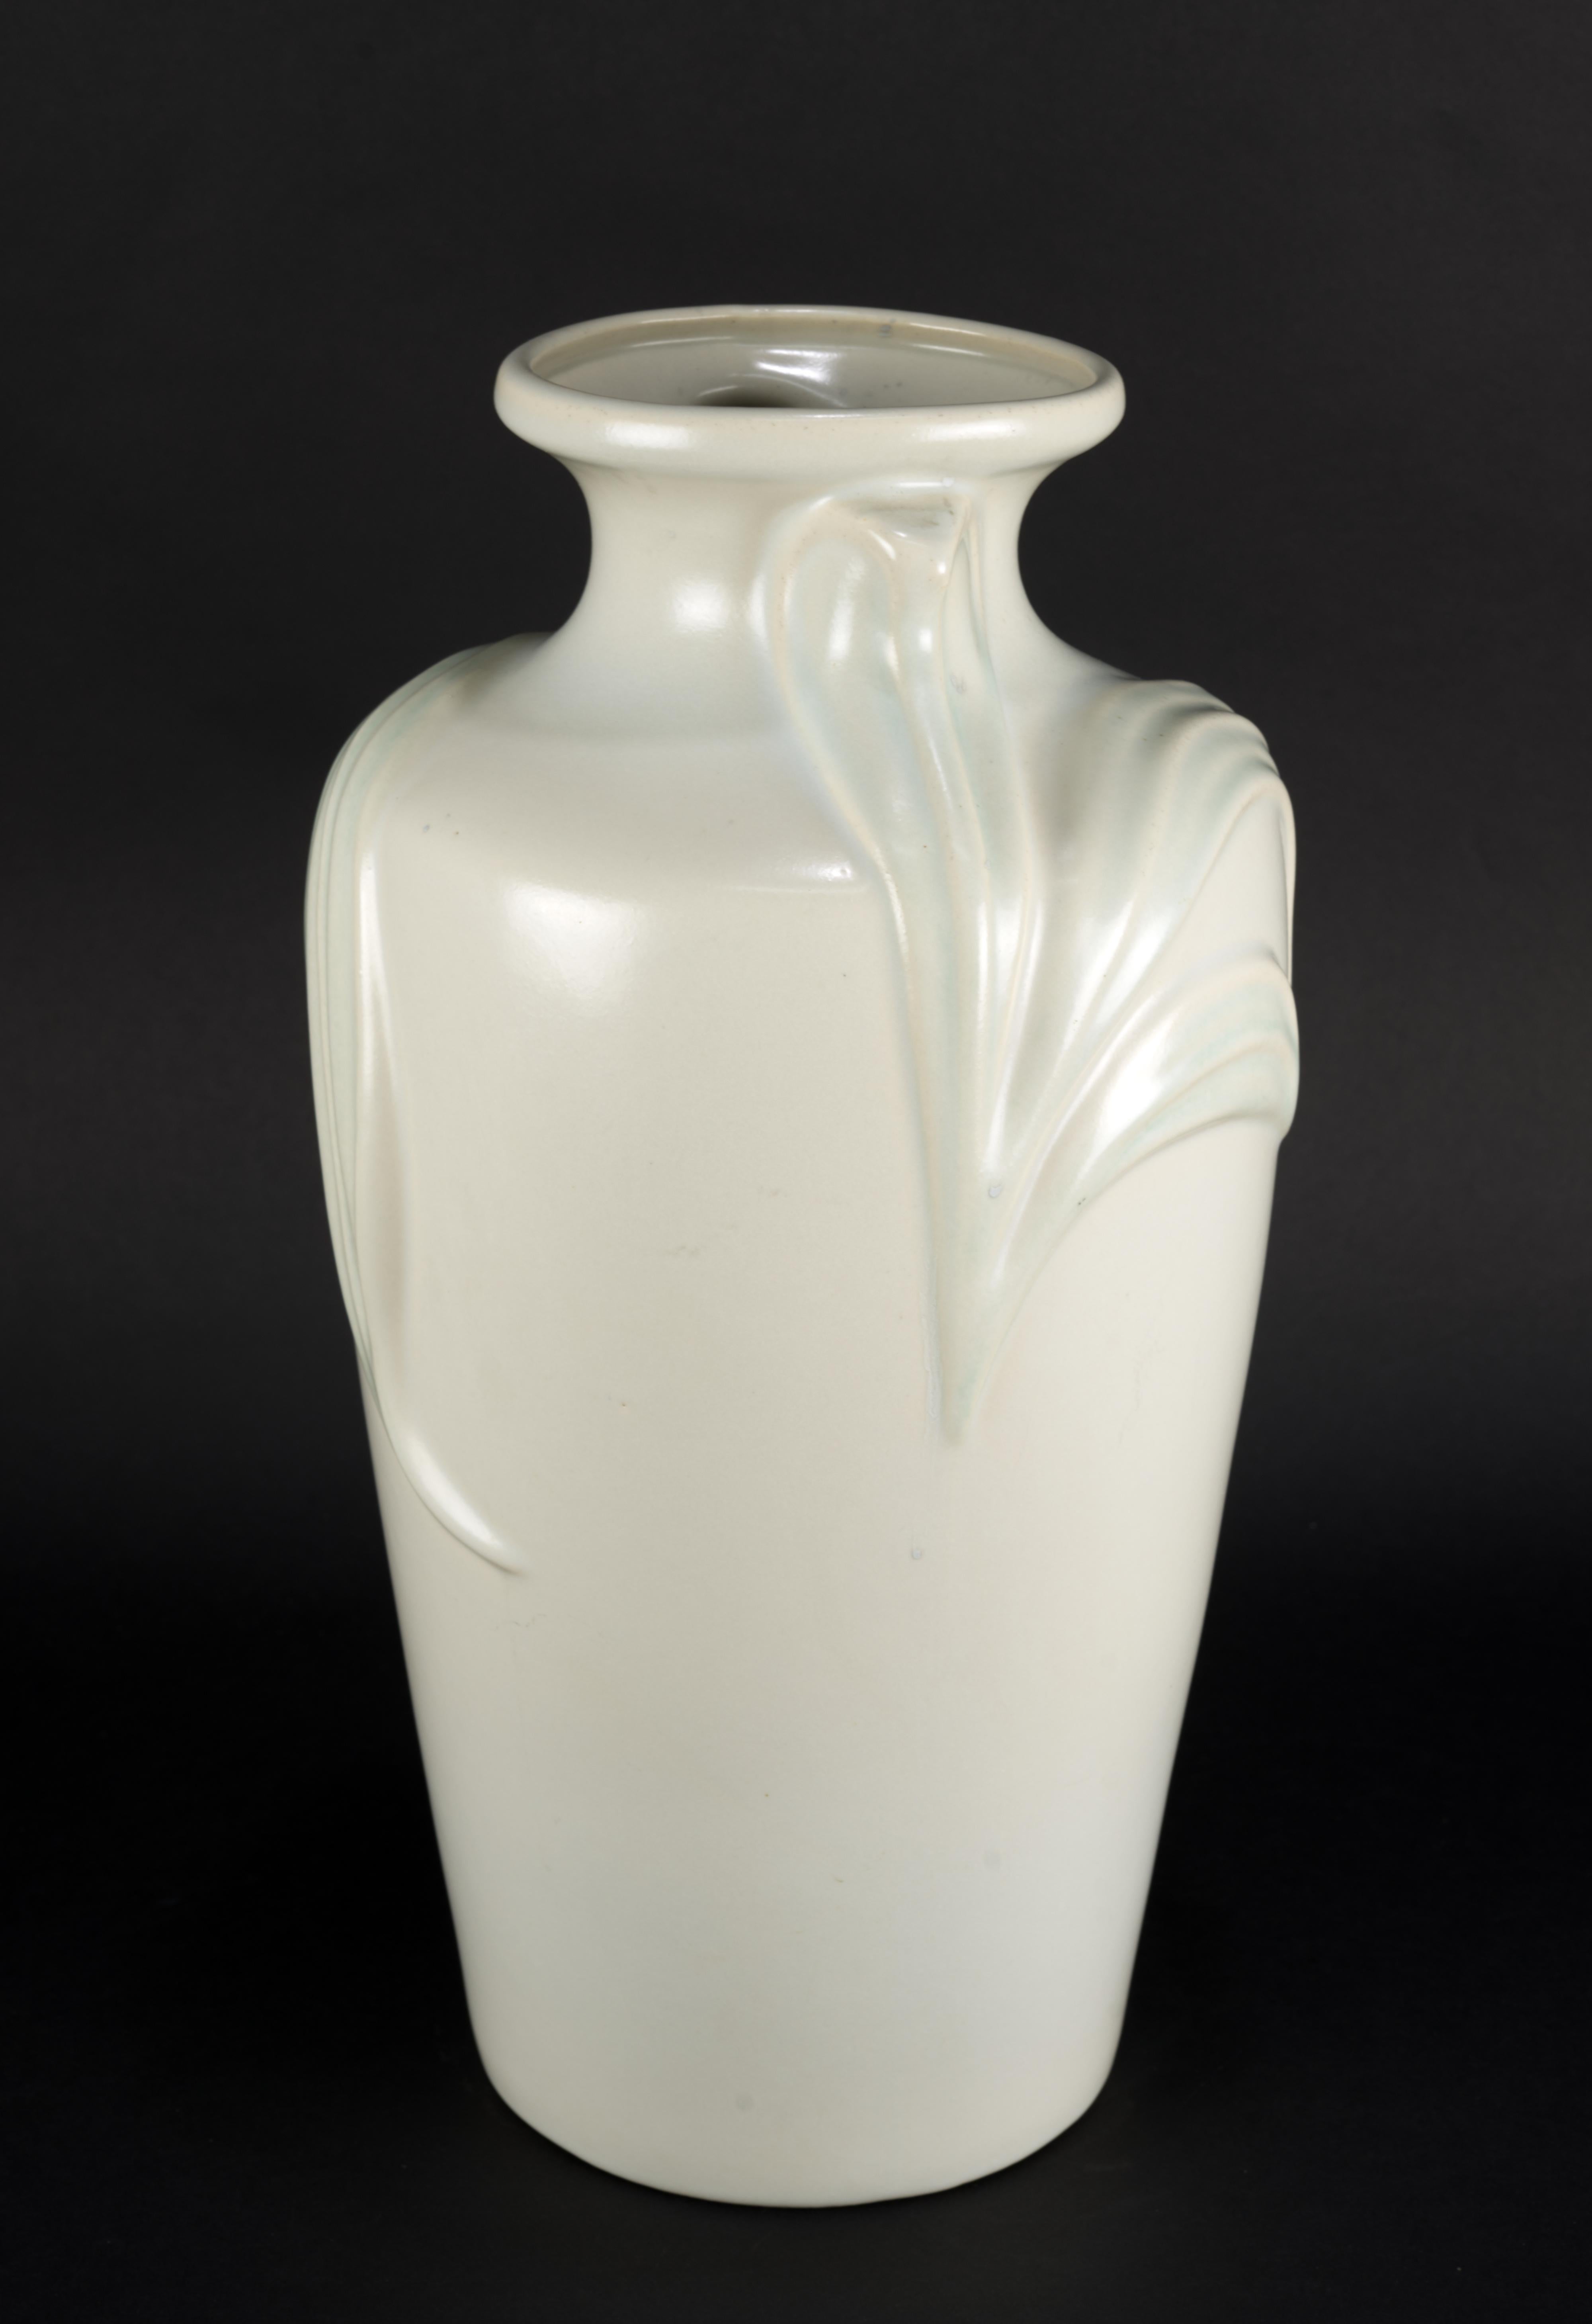  Ce grand vase en glaçure semi-mate bleu clair et blanc cassé de style Art Déco Revival a été fabriqué dans les années 1980 par Harris Pottery à Chicago, Illinois. Le vase est décoré en relief de grandes feuilles qui s'enroulent autour du sommet du